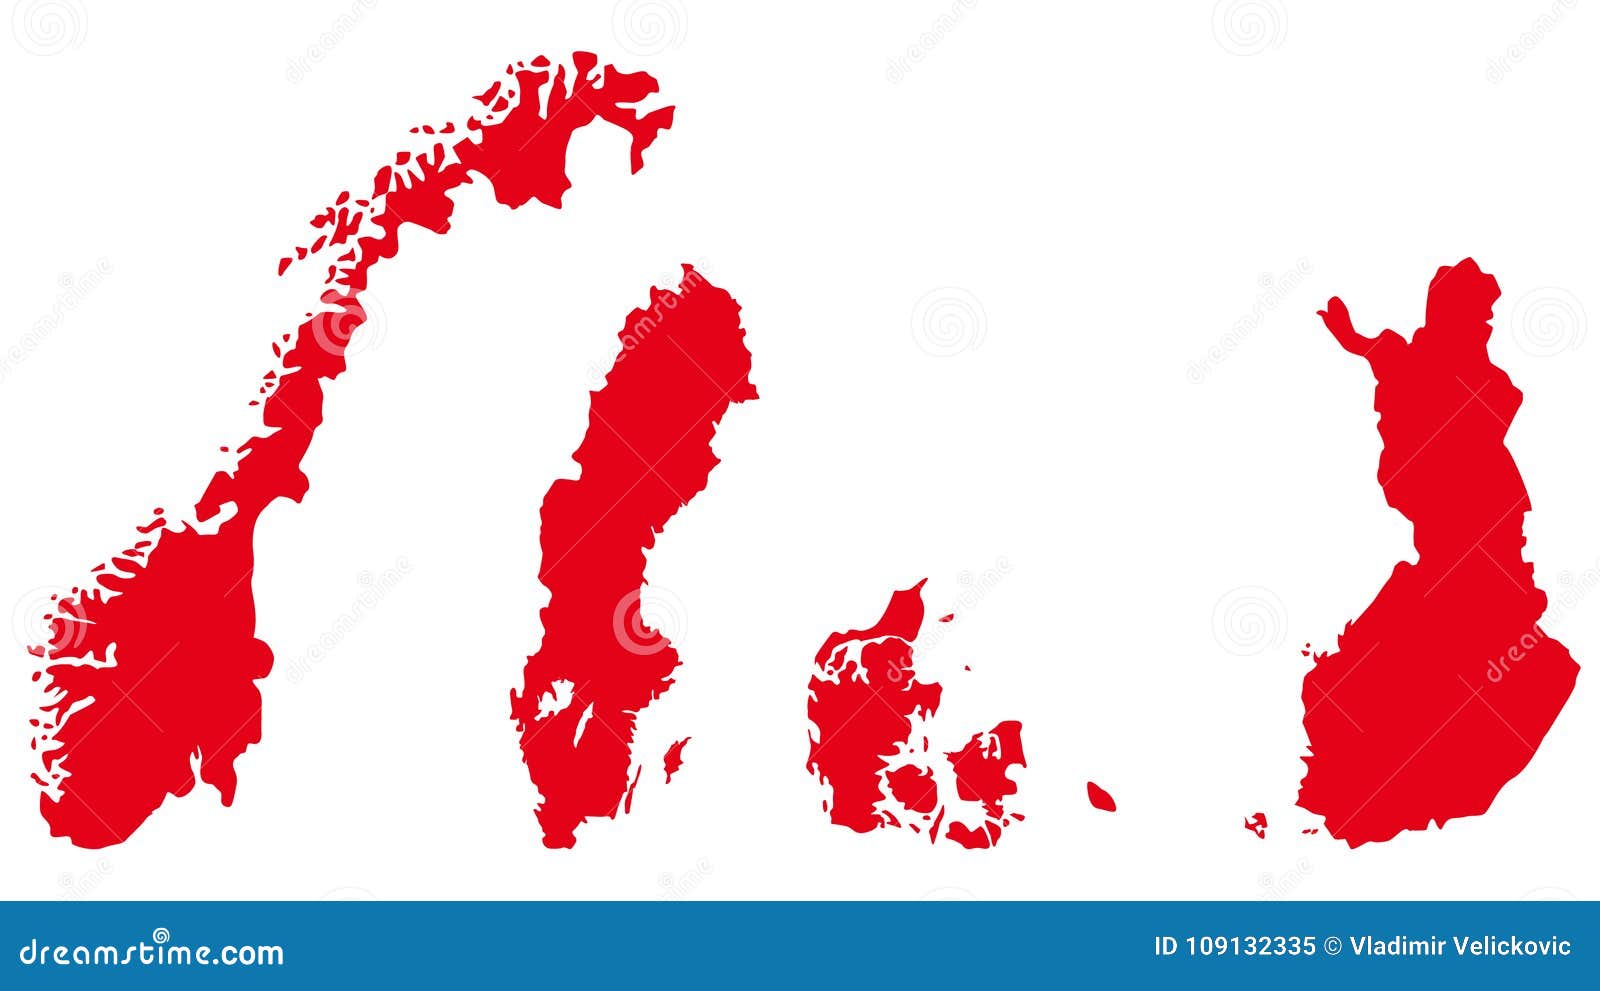 Quais são os países escandinavos?